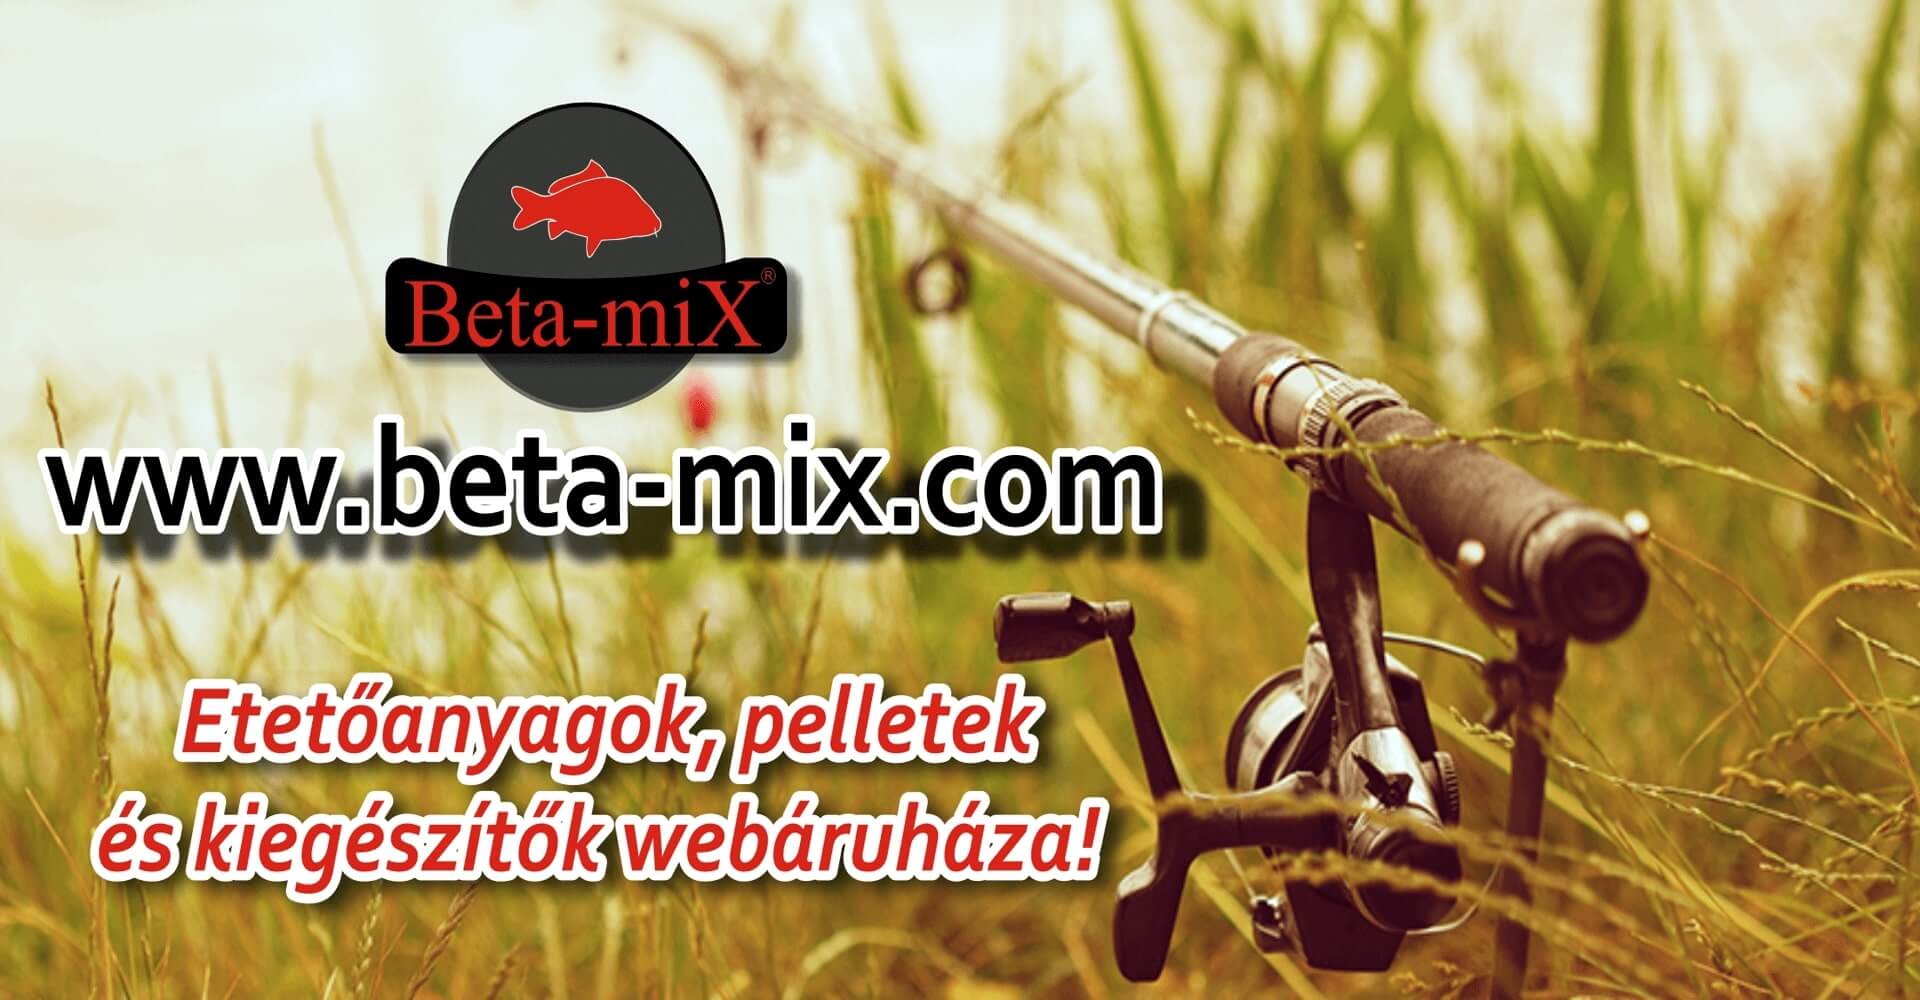 Beta-Mix: az új Magyar termék, amely megváltoztatja a horgászok mindennapjait.